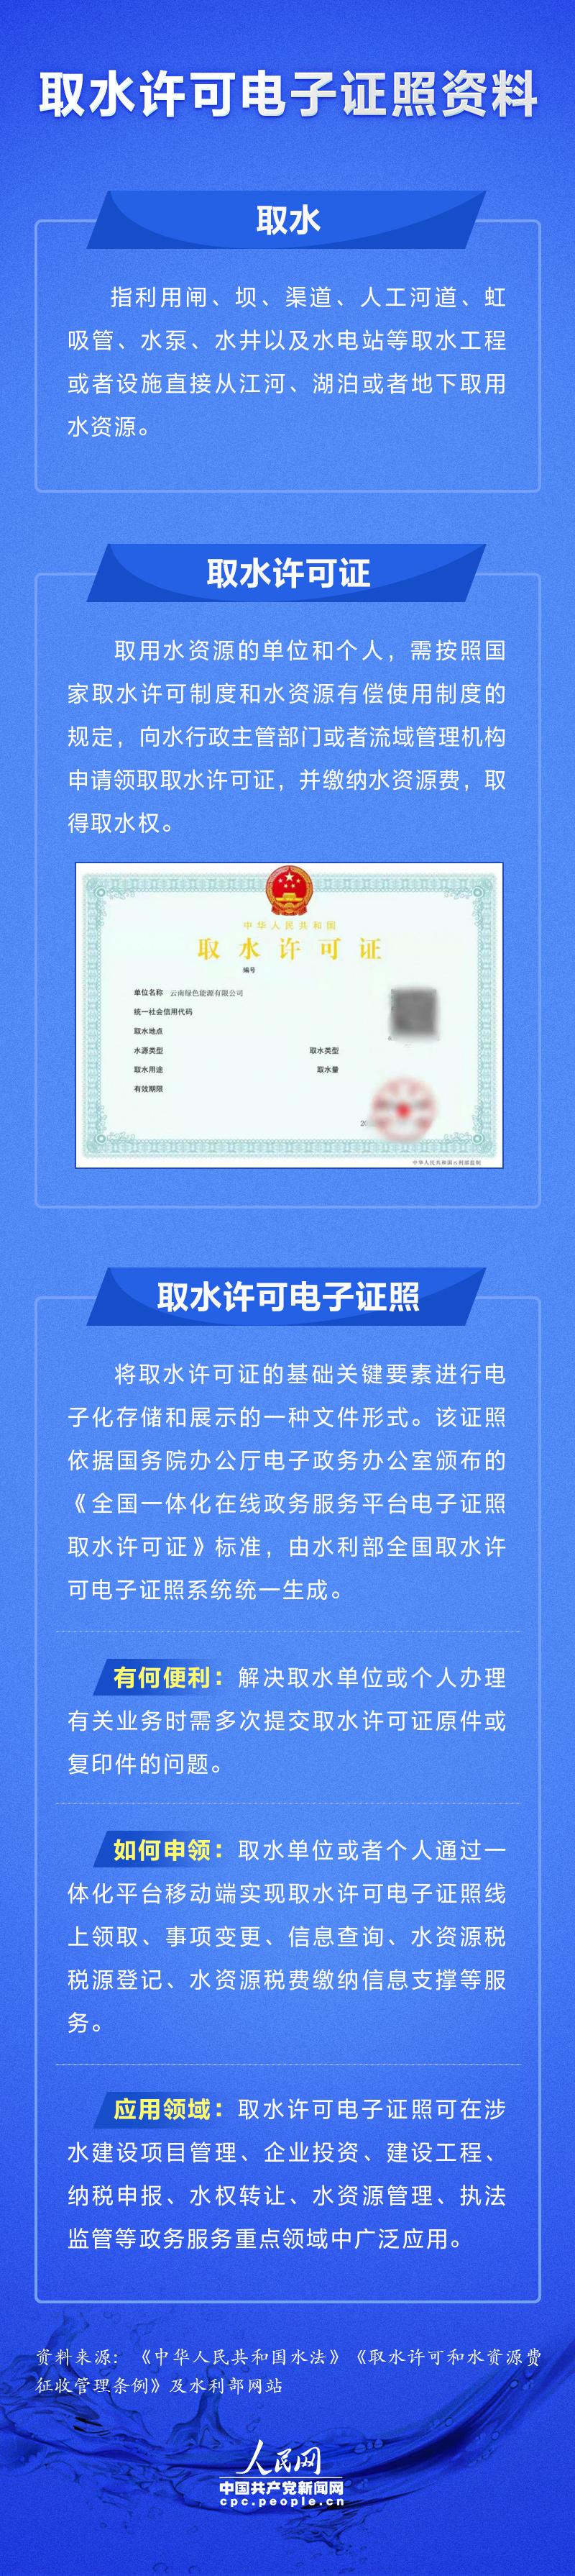 云南颁发首张取水许可电子证照 申办过程省时省力还环保